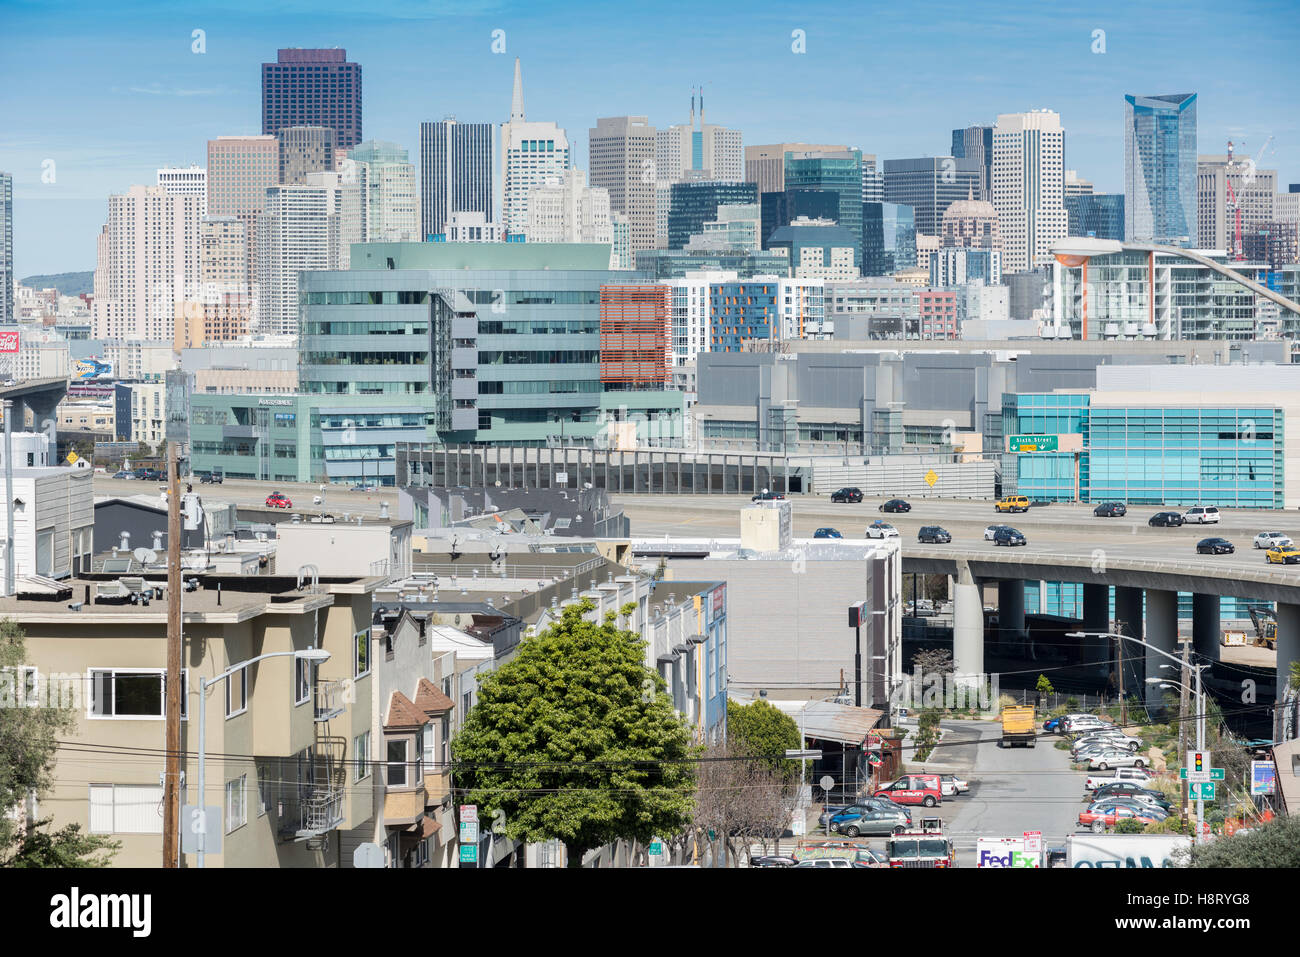 Horizonte de en gran parte del distrito comercial del centro de la ciudad de San Francisco, California, EE.UU. Foto de stock